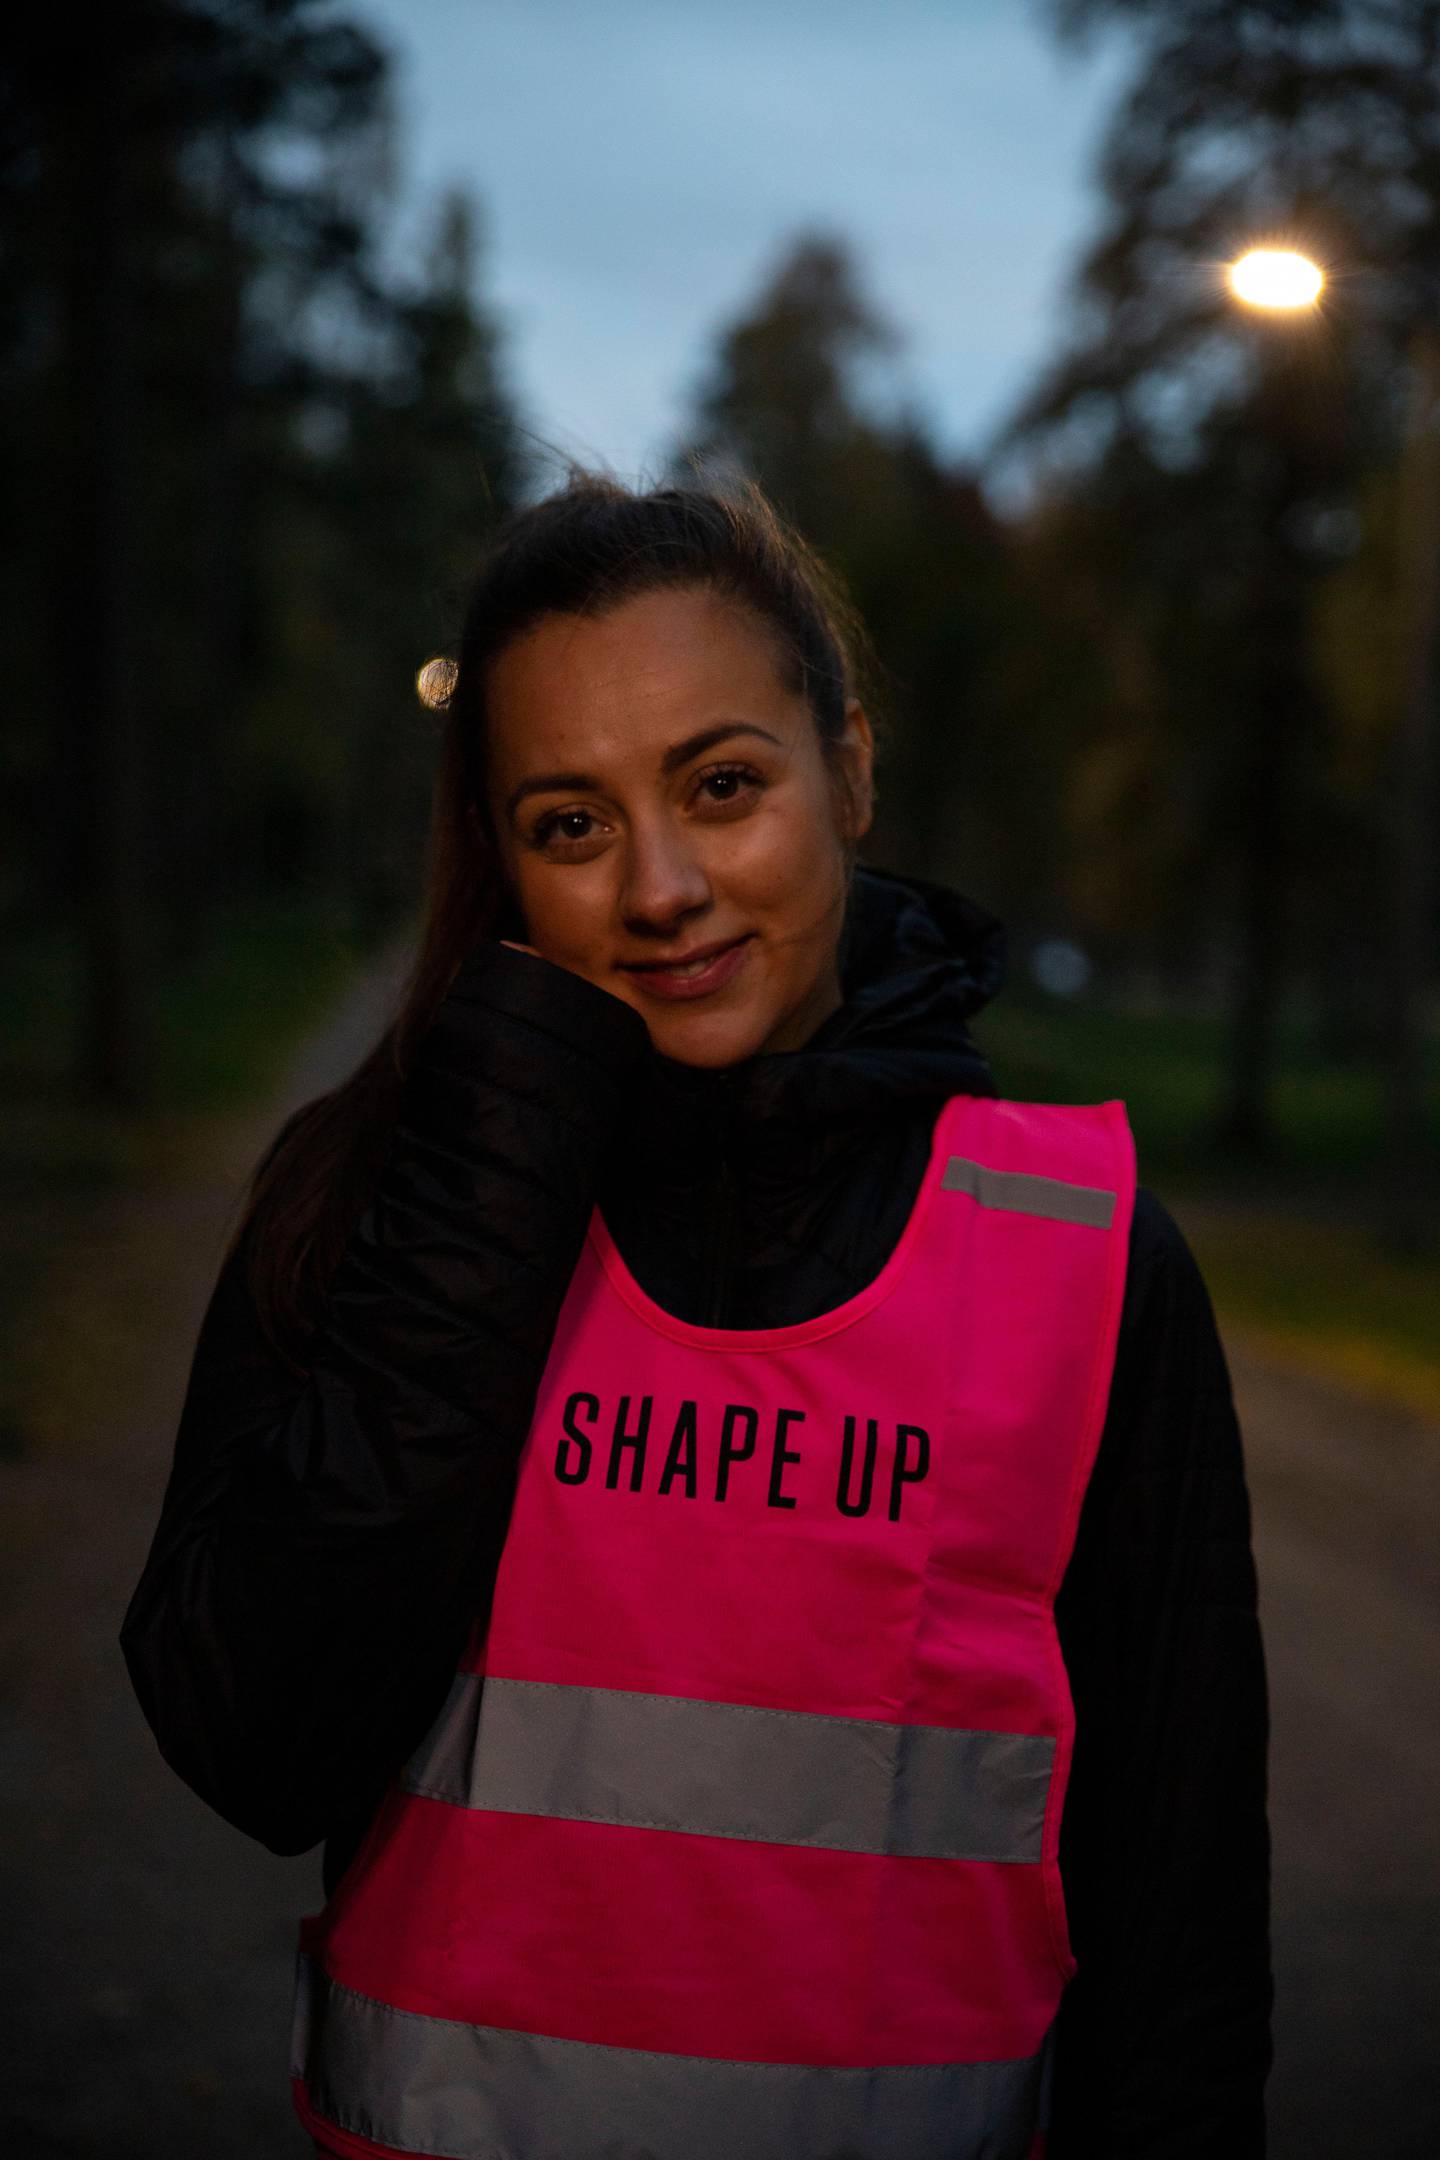 Hanna Sundquist er redaksjonssjef i magasinet ShapeUp. Hun synes det er leit at så mange jenter synes det er skummelt å trene utendørs når mørket har lagt seg. Men, hun synes ikke at tallene er overraskende og flytter selv treningen inn.